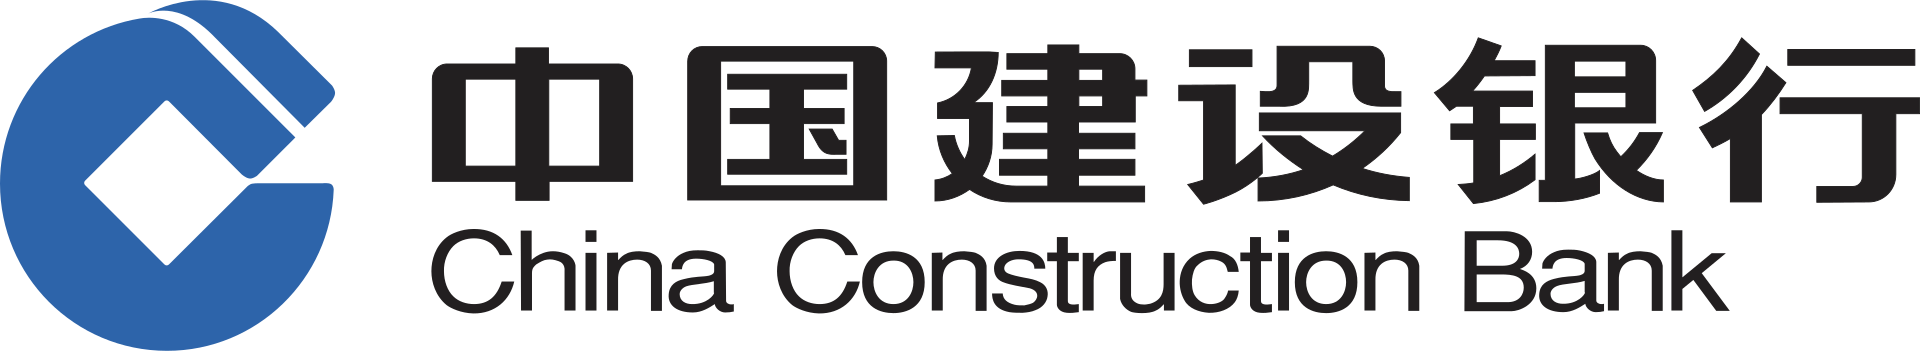 China_Construction_Bank